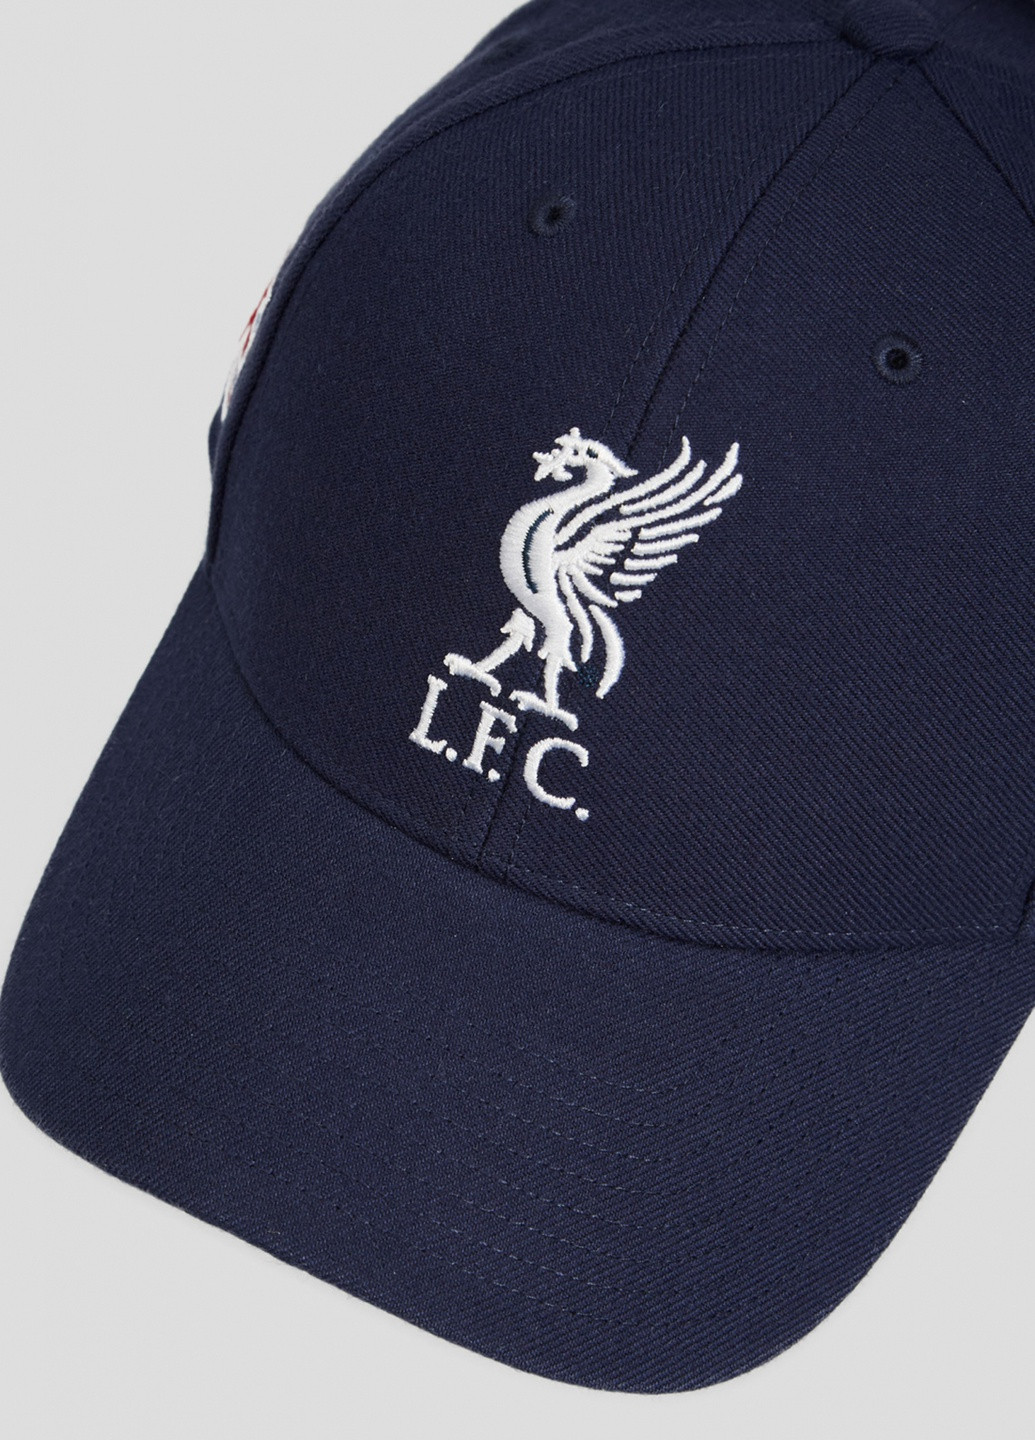 Синяя кепка Liverpool Fc Light Navy Sure S 47 Brand (255240963)